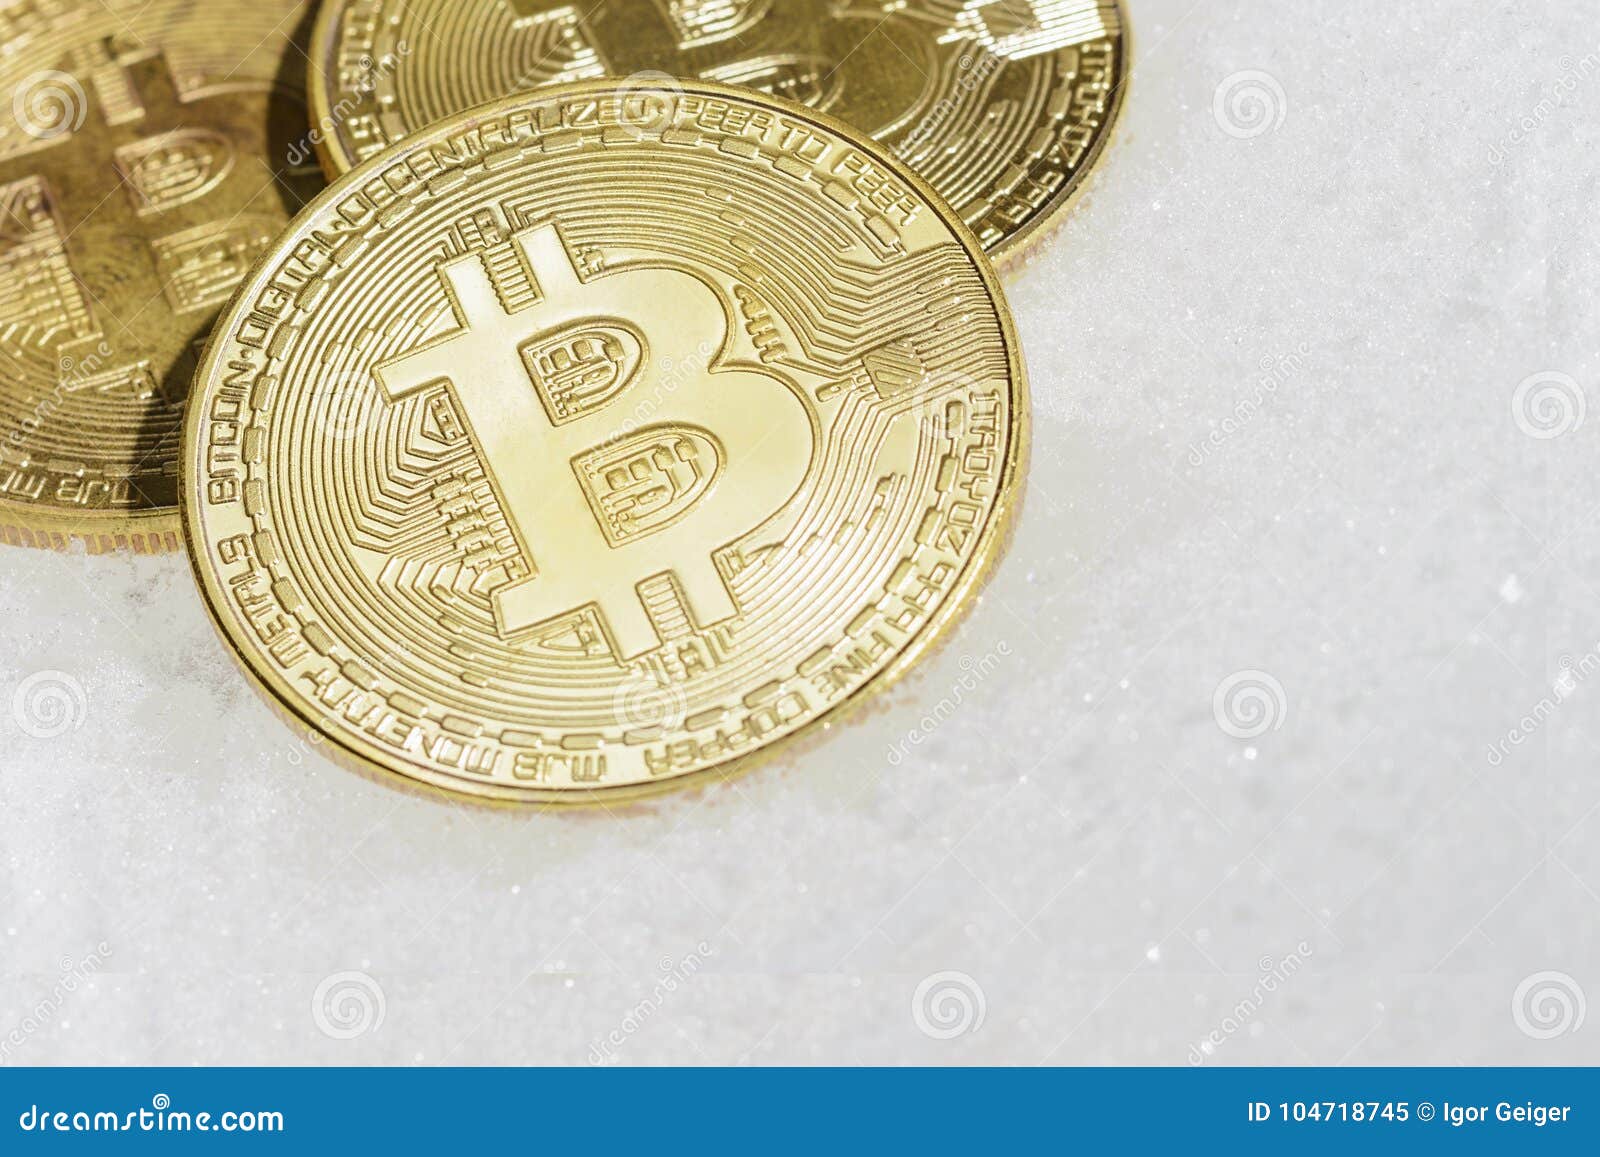 web 3 coins crypto